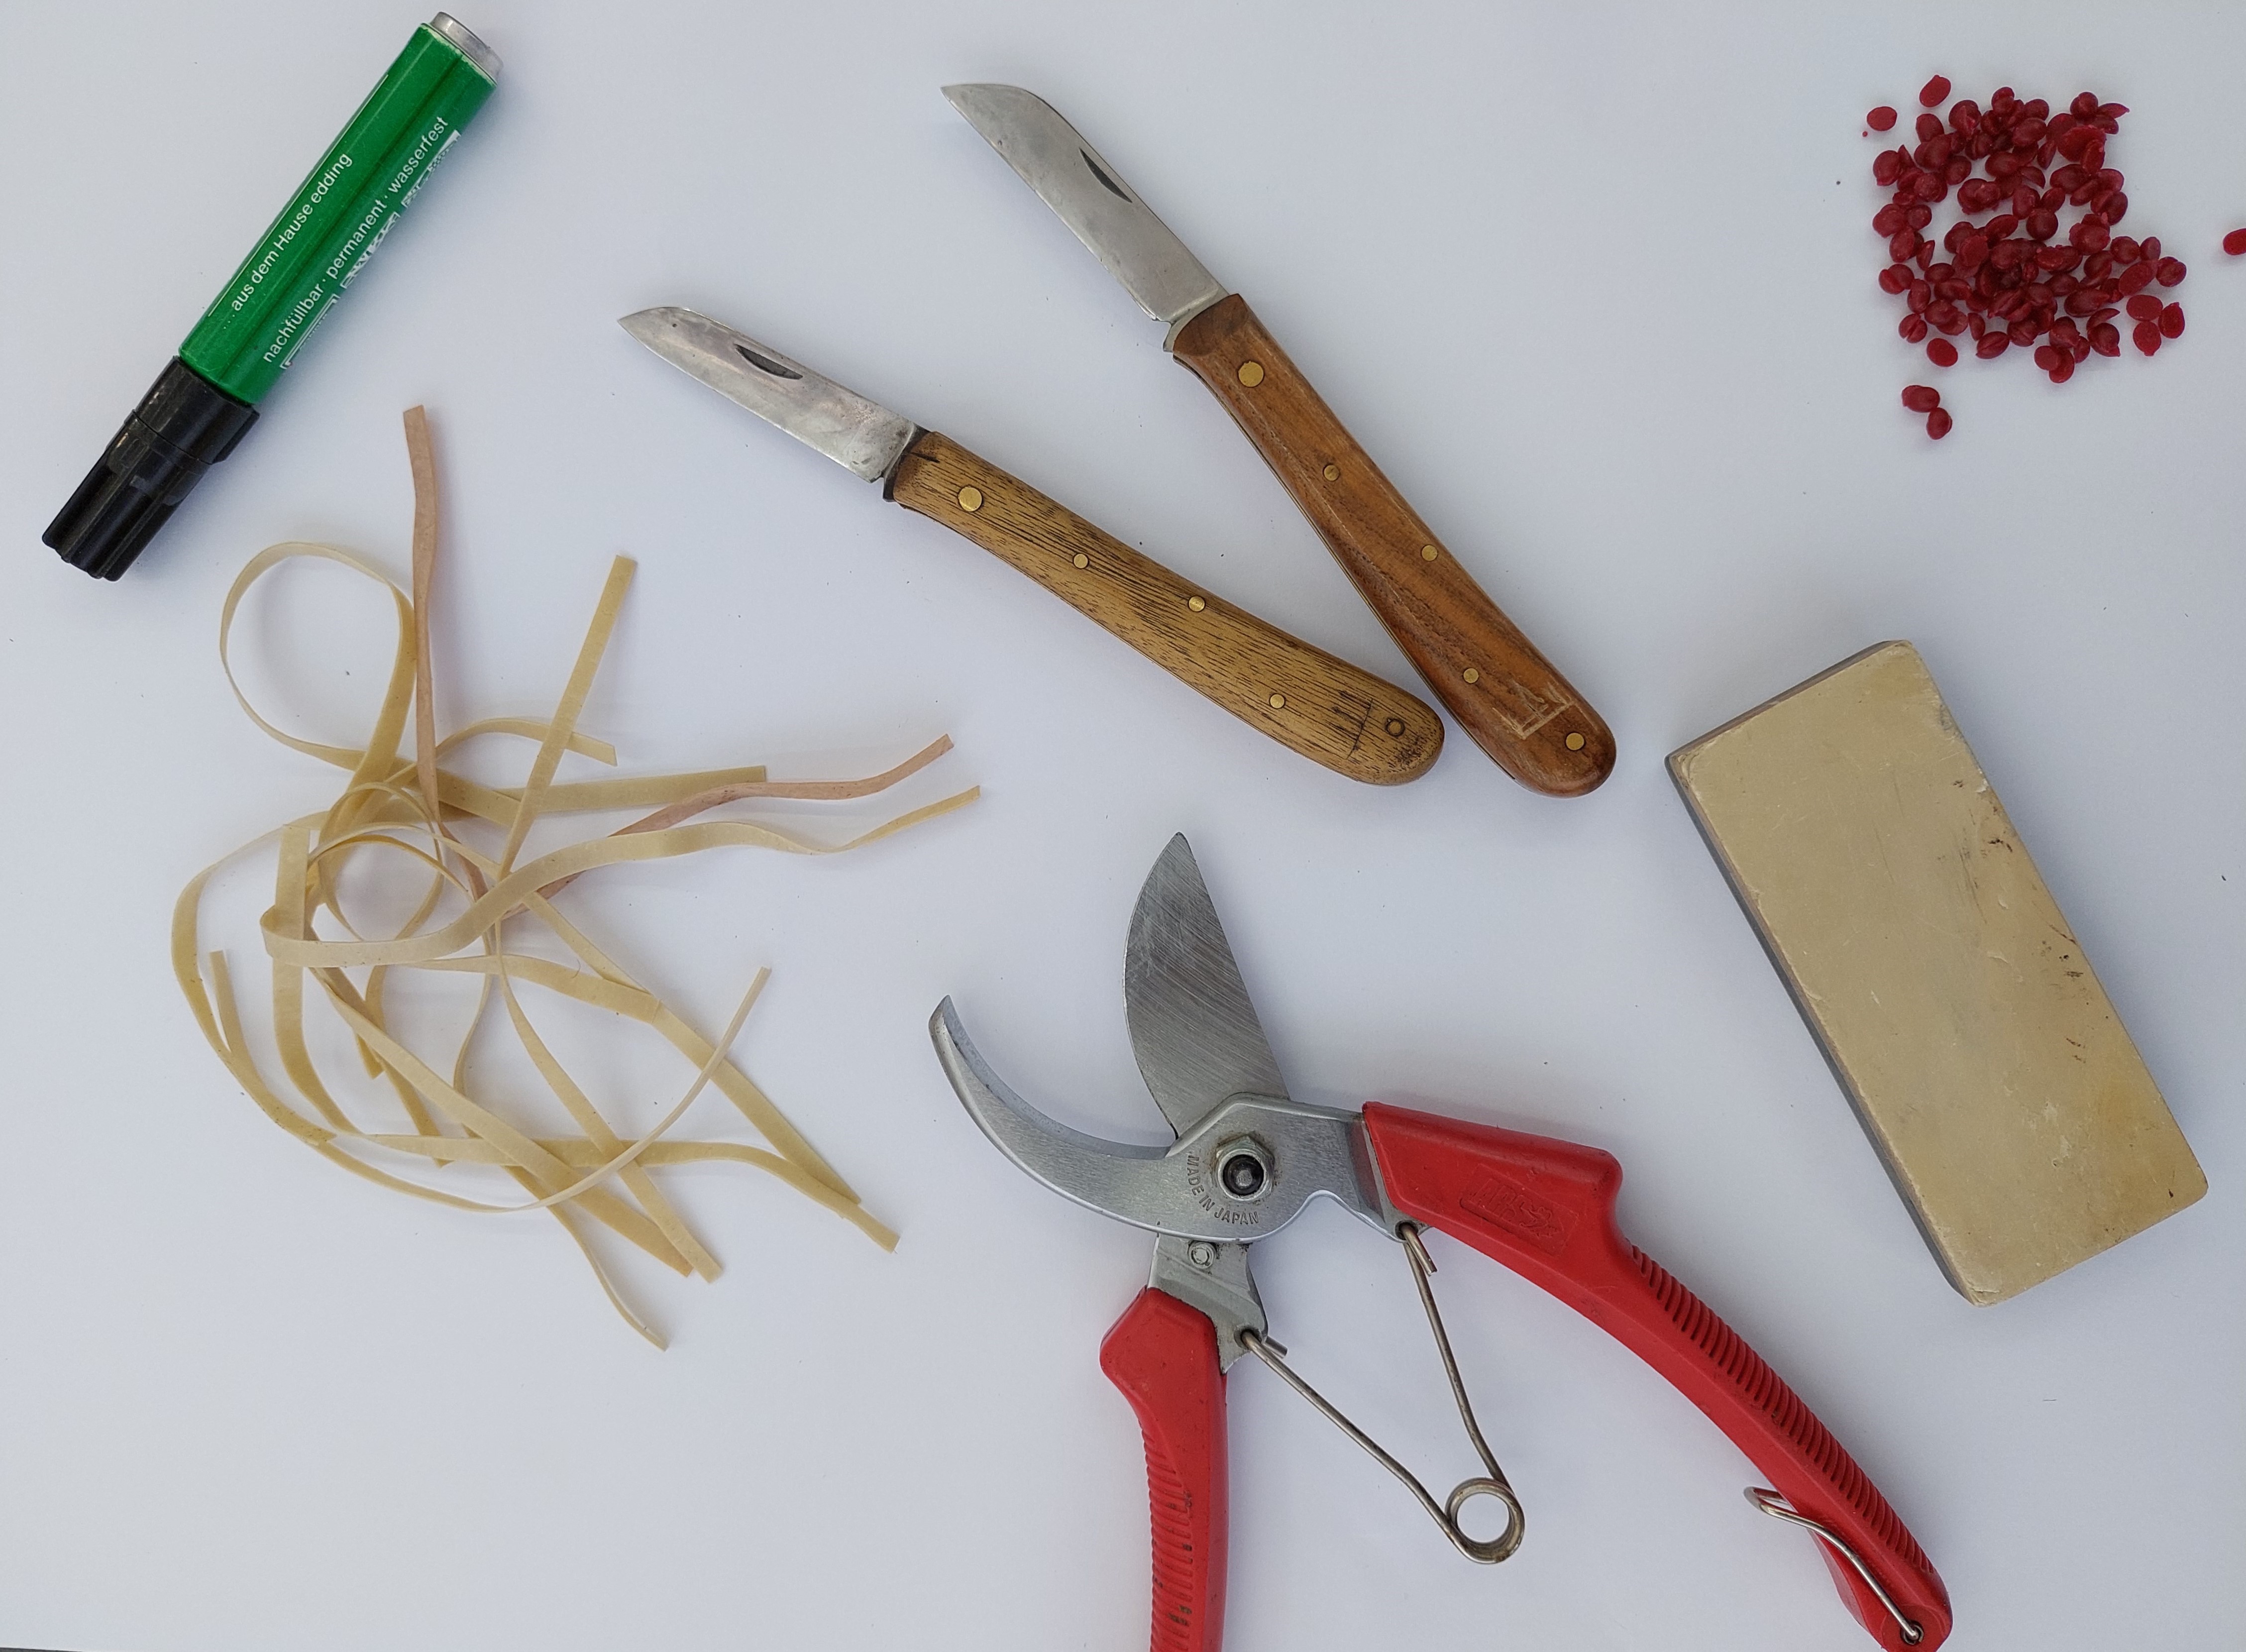 Zdjęcie przedstawia narzędzia użyte do szczepienia roślin: sekator, nóż, wosk, gumki, flamaster. Fot. Martyna Kuźniak (Nadleśnictwo Syców).